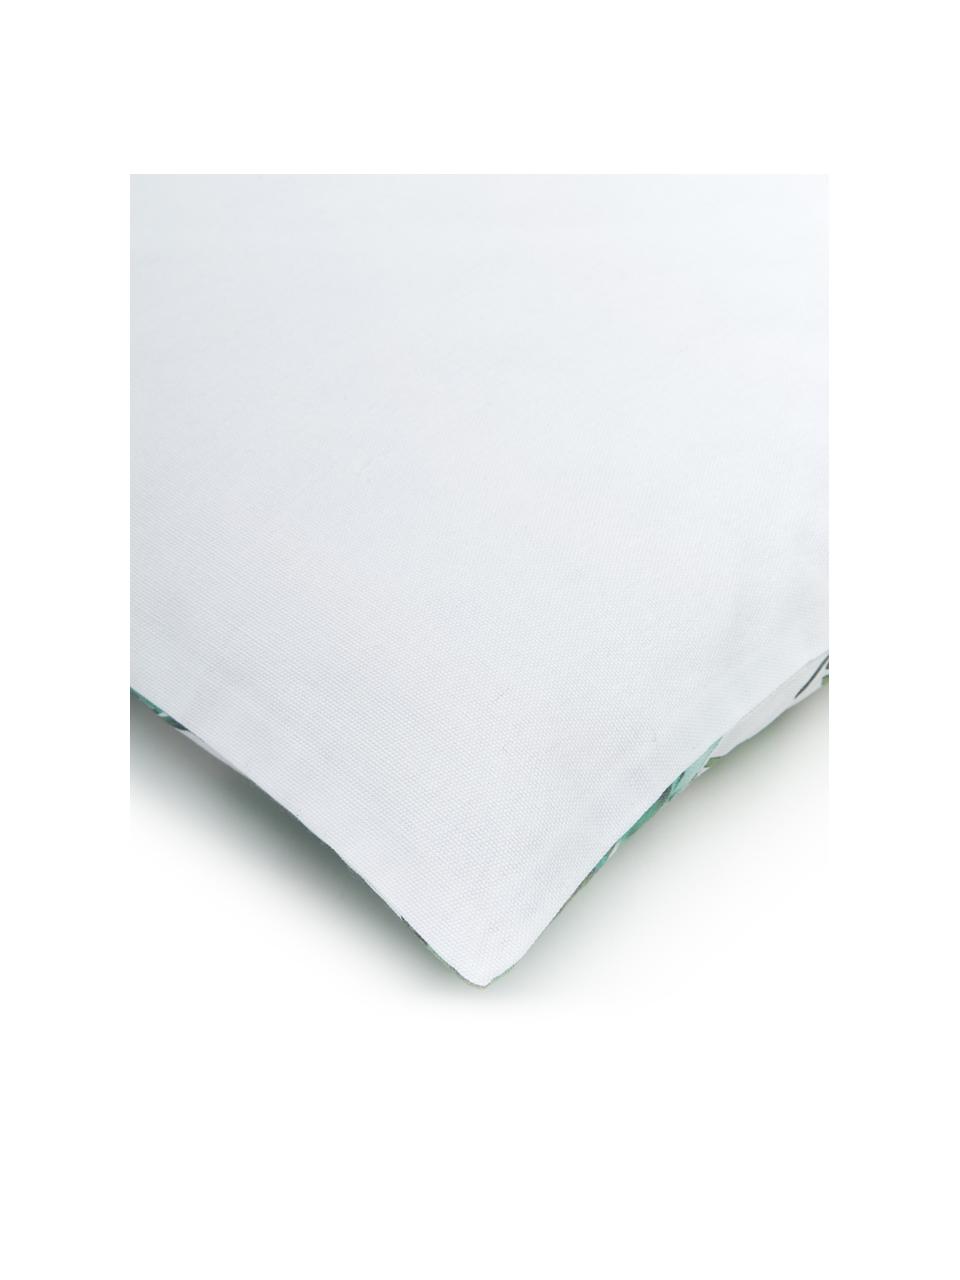 Poszewka na poduszkę Shade, 100% bawełna, Zielony, biały, S 45 x D 45 cm